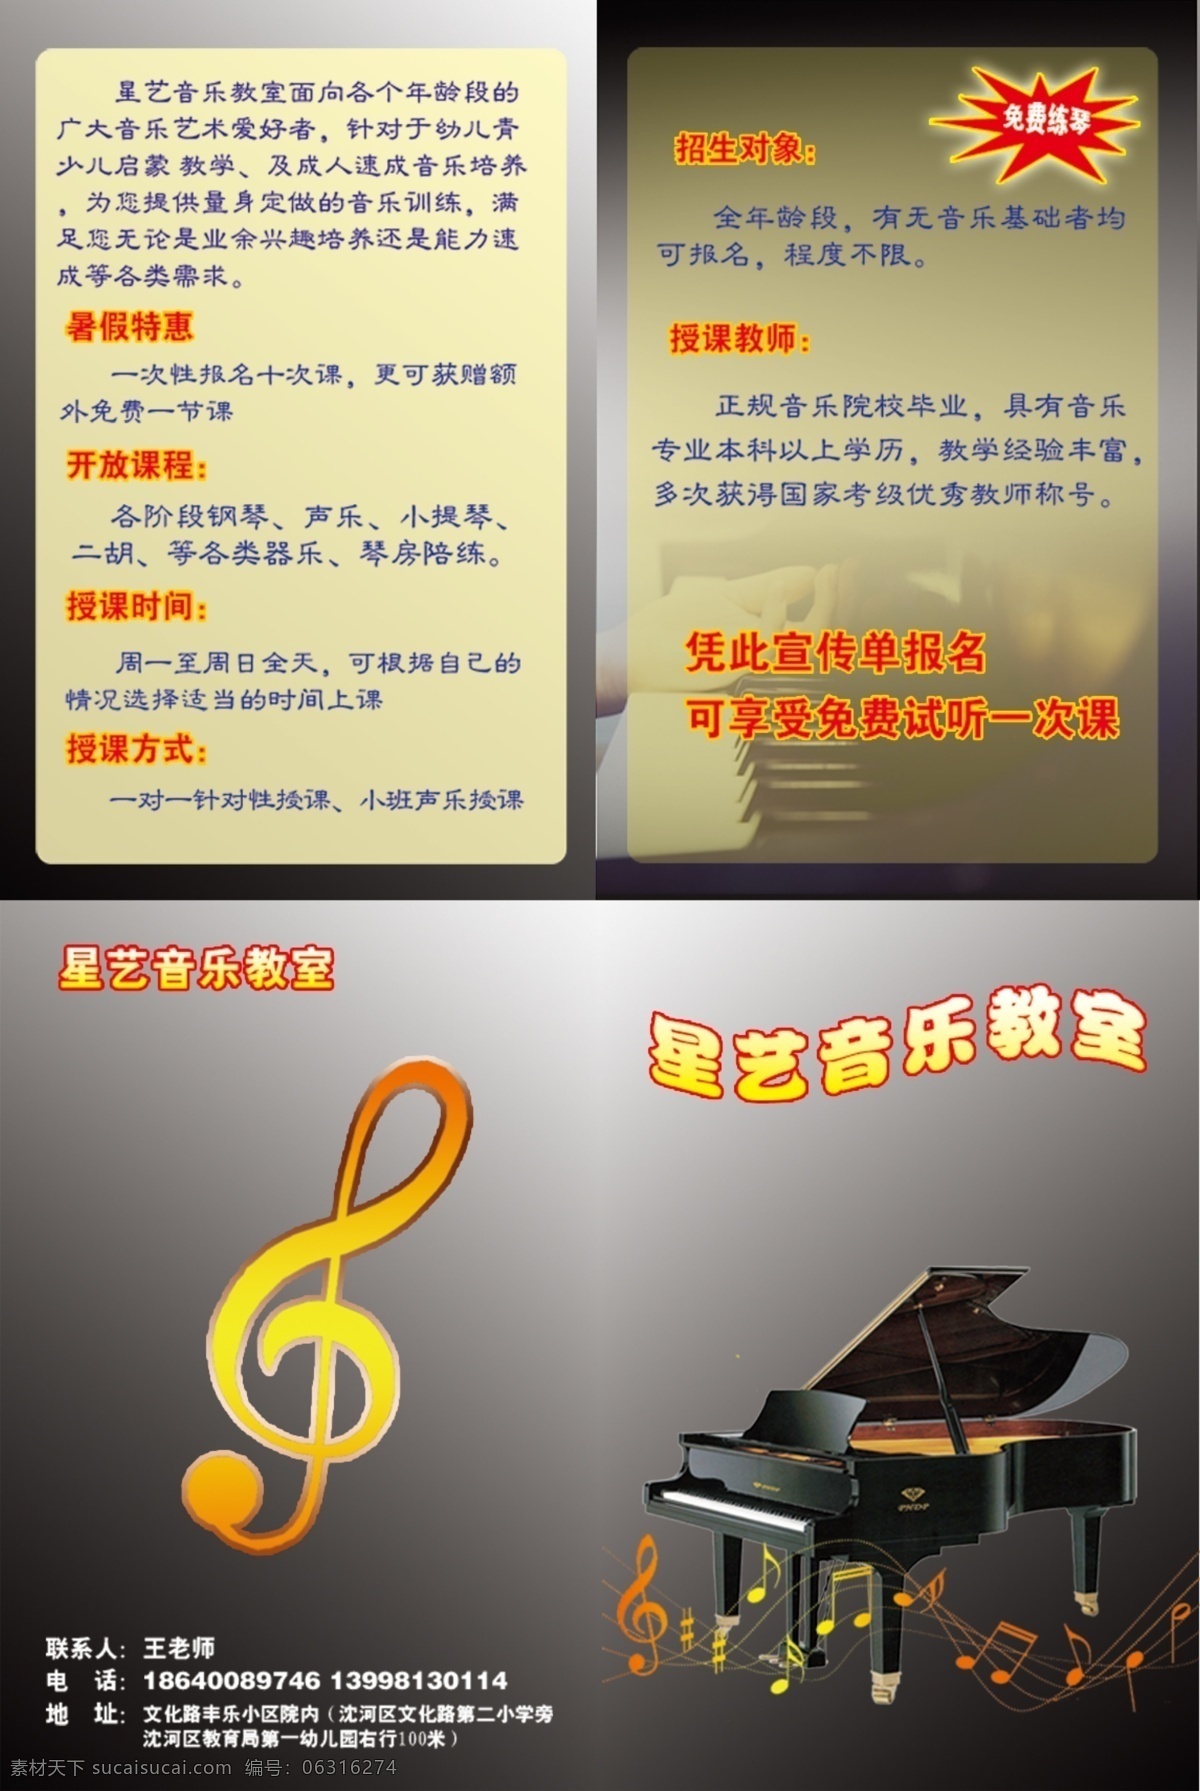 钢琴 班 培训 传单 高音符号 钢琴培训 音符 免费练琴 钢琴键 dm宣传单 广告设计模板 源文件